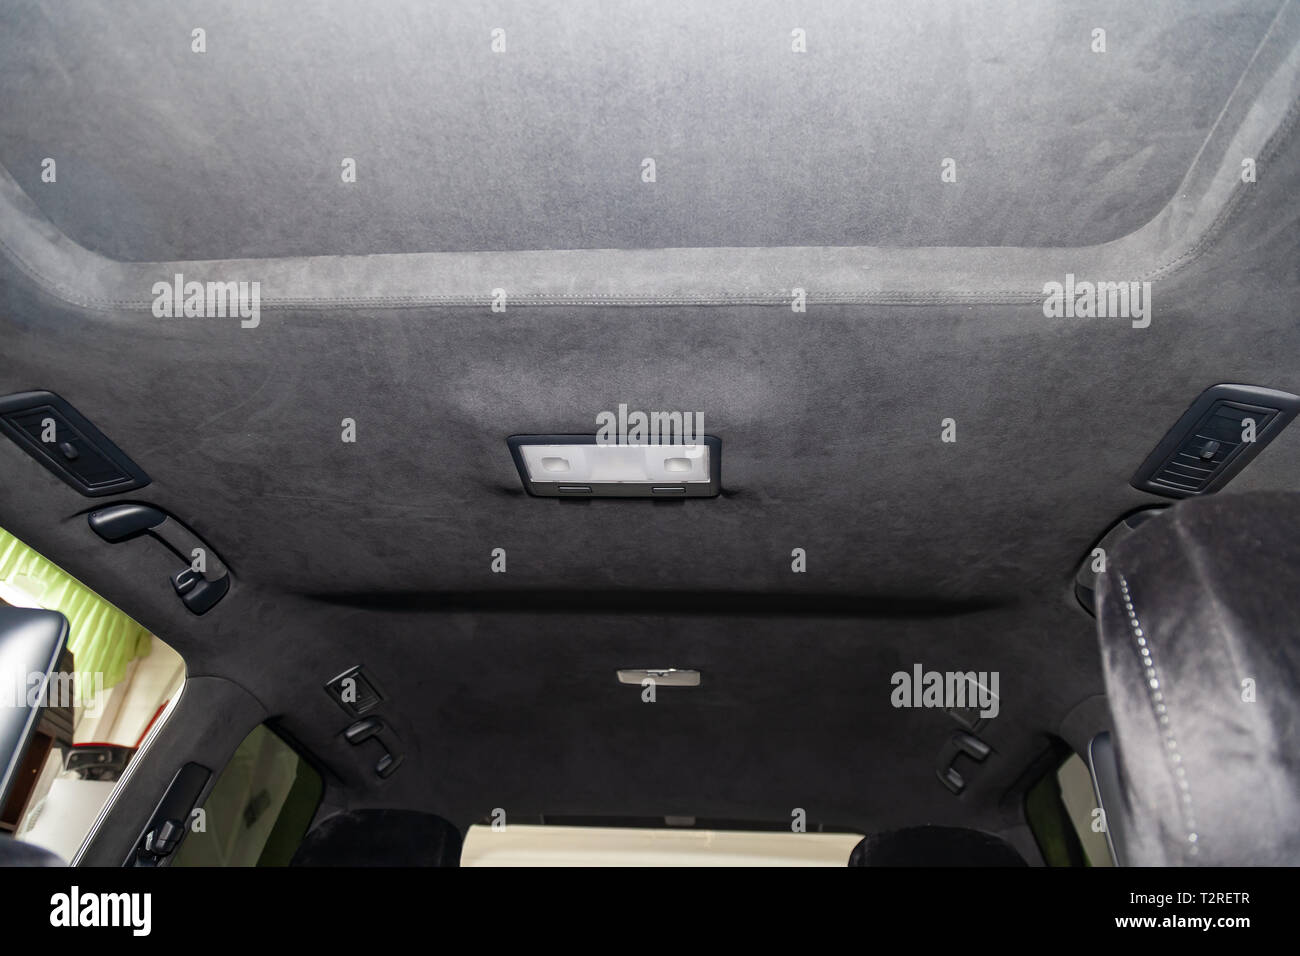 Die Decke der SUV-Auto mit Schiebedach durch graue weiche Material in der  Werkstatt für Tuning und Styling der Innenraum der Fahrzeuge mit  Schiebedach gezogen Stockfotografie - Alamy